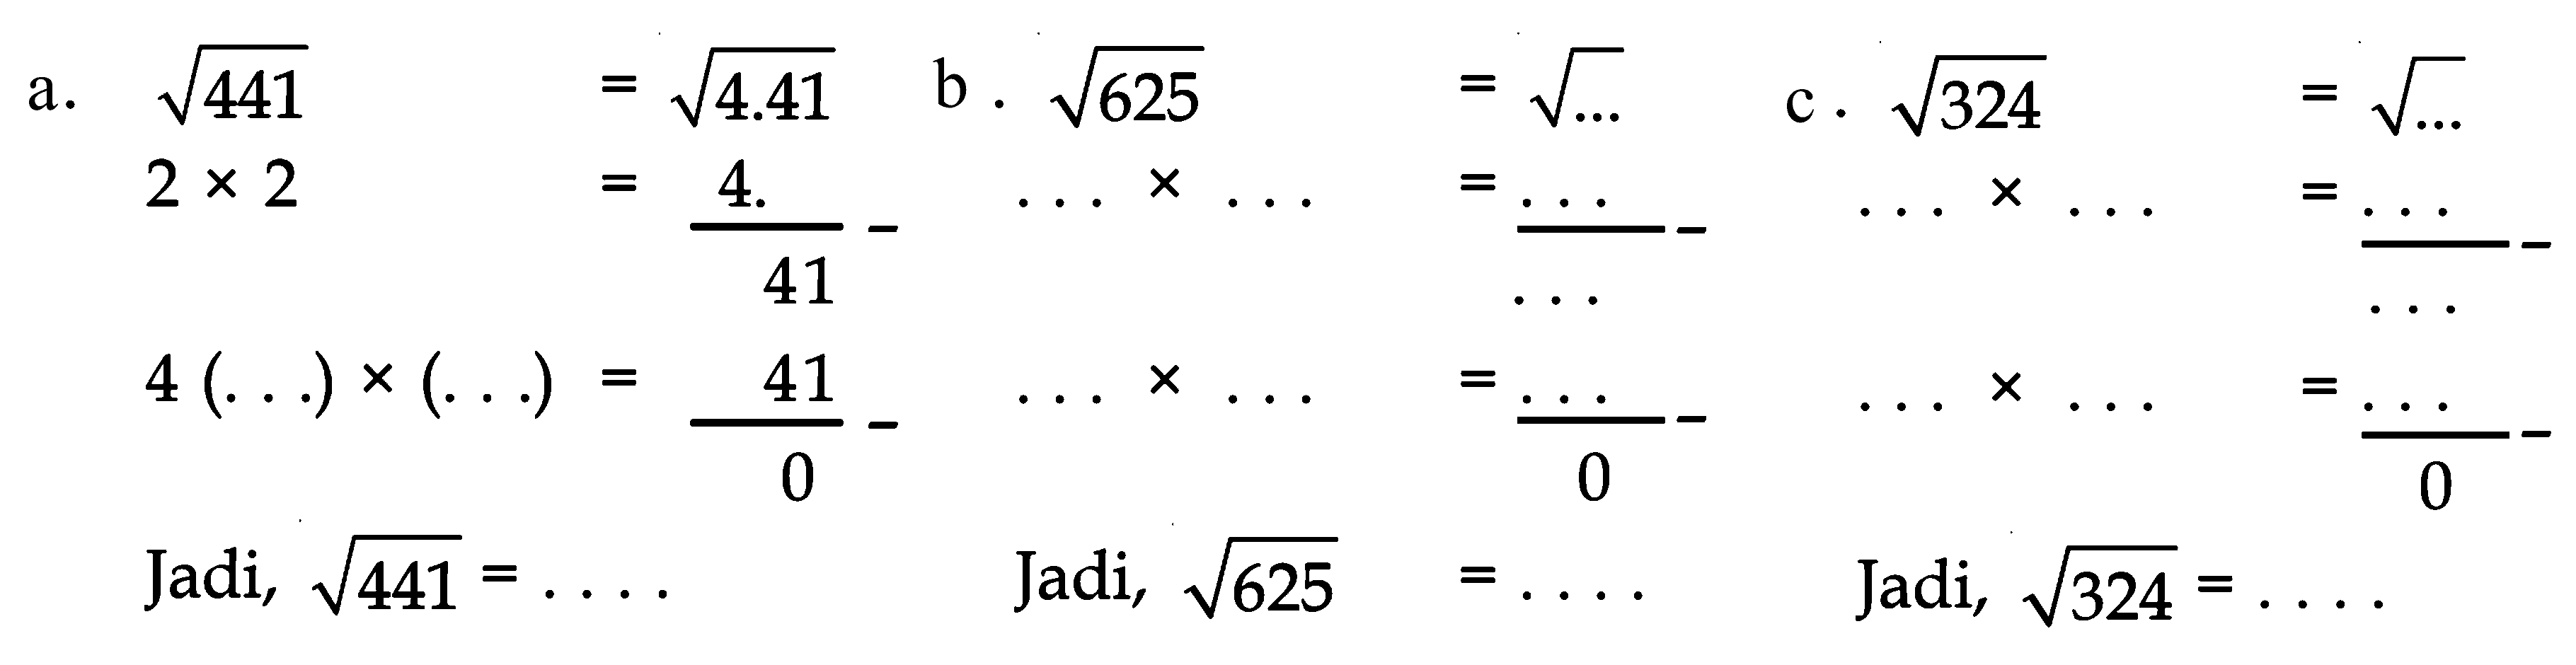 a. akar(441) = akar(4.41) 2 x 2 = 4. - 41 4 (. . .) x (. . .) = 41 - 0 Jadi, akar(441) = . . . . b. akar(625) = akar(...) (. . .) x (. . .) = . . . - . . . (. . .) x (. . .) = . . . - 0 Jadi, akar(625) = . . . . c. akar(324) = akar(...) (. . .) x (. . .) = . . . - . . . (. . .) x (. . .) = . . . - 0 Jadi, akar(324) = . . . .